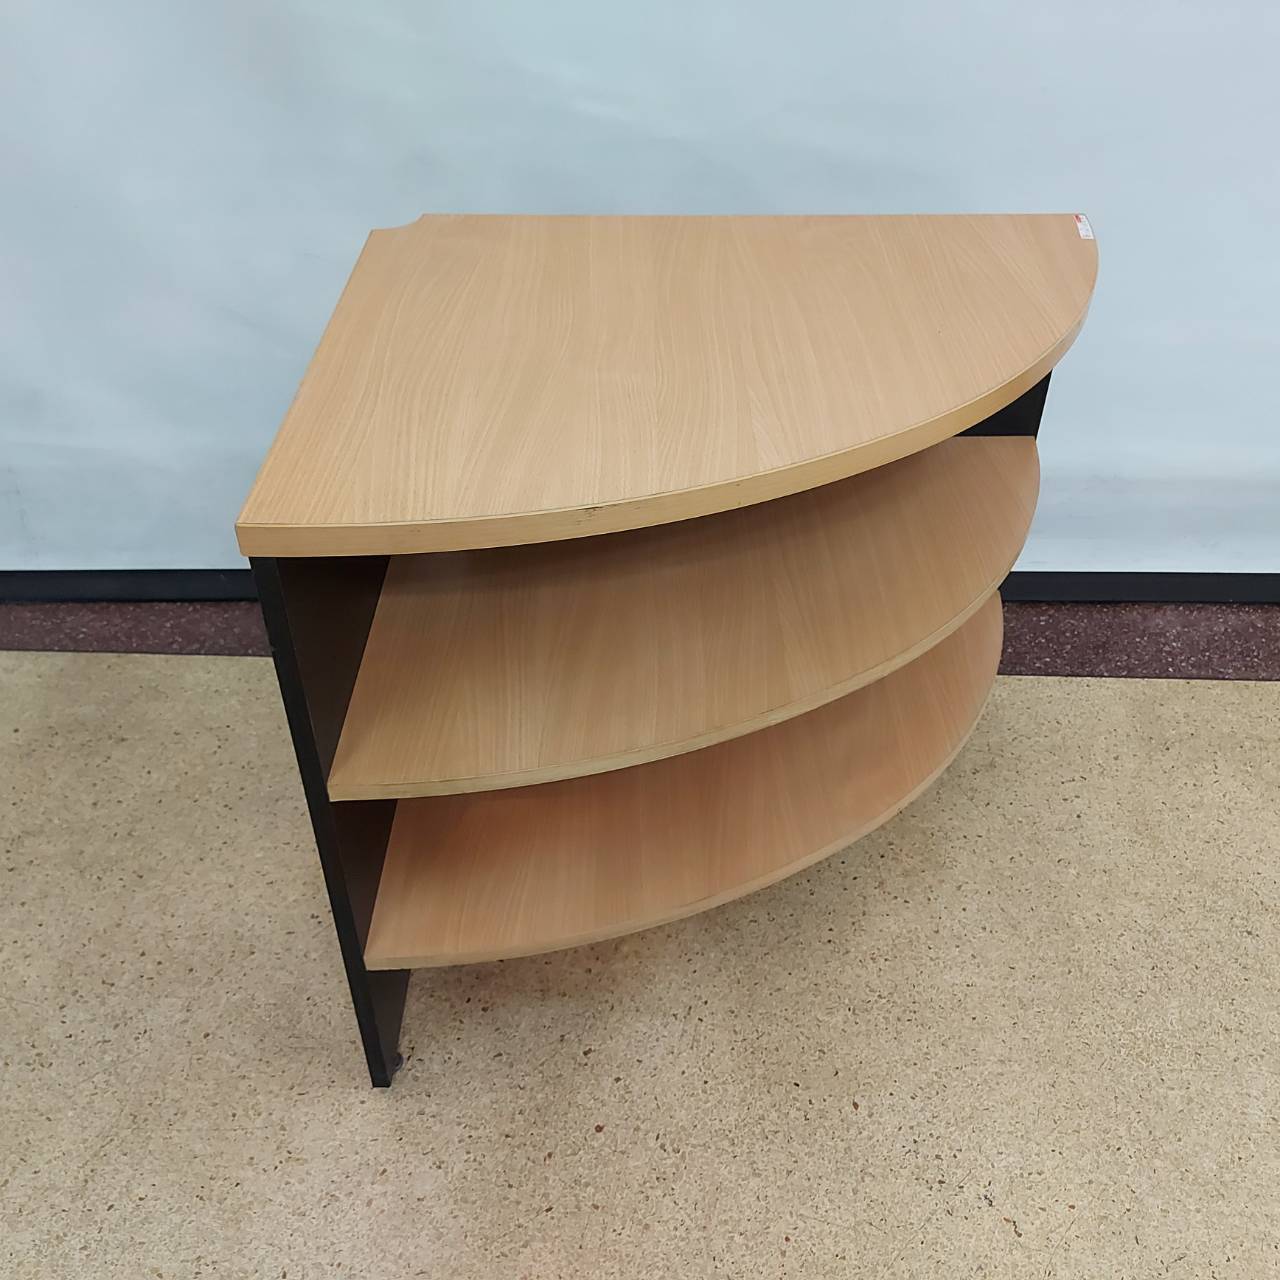 โต๊ะวางของแบบเข้ามุมไม้สีบีช-ดำ    ชั้นวางของ  3 ชั้นสีบีช 